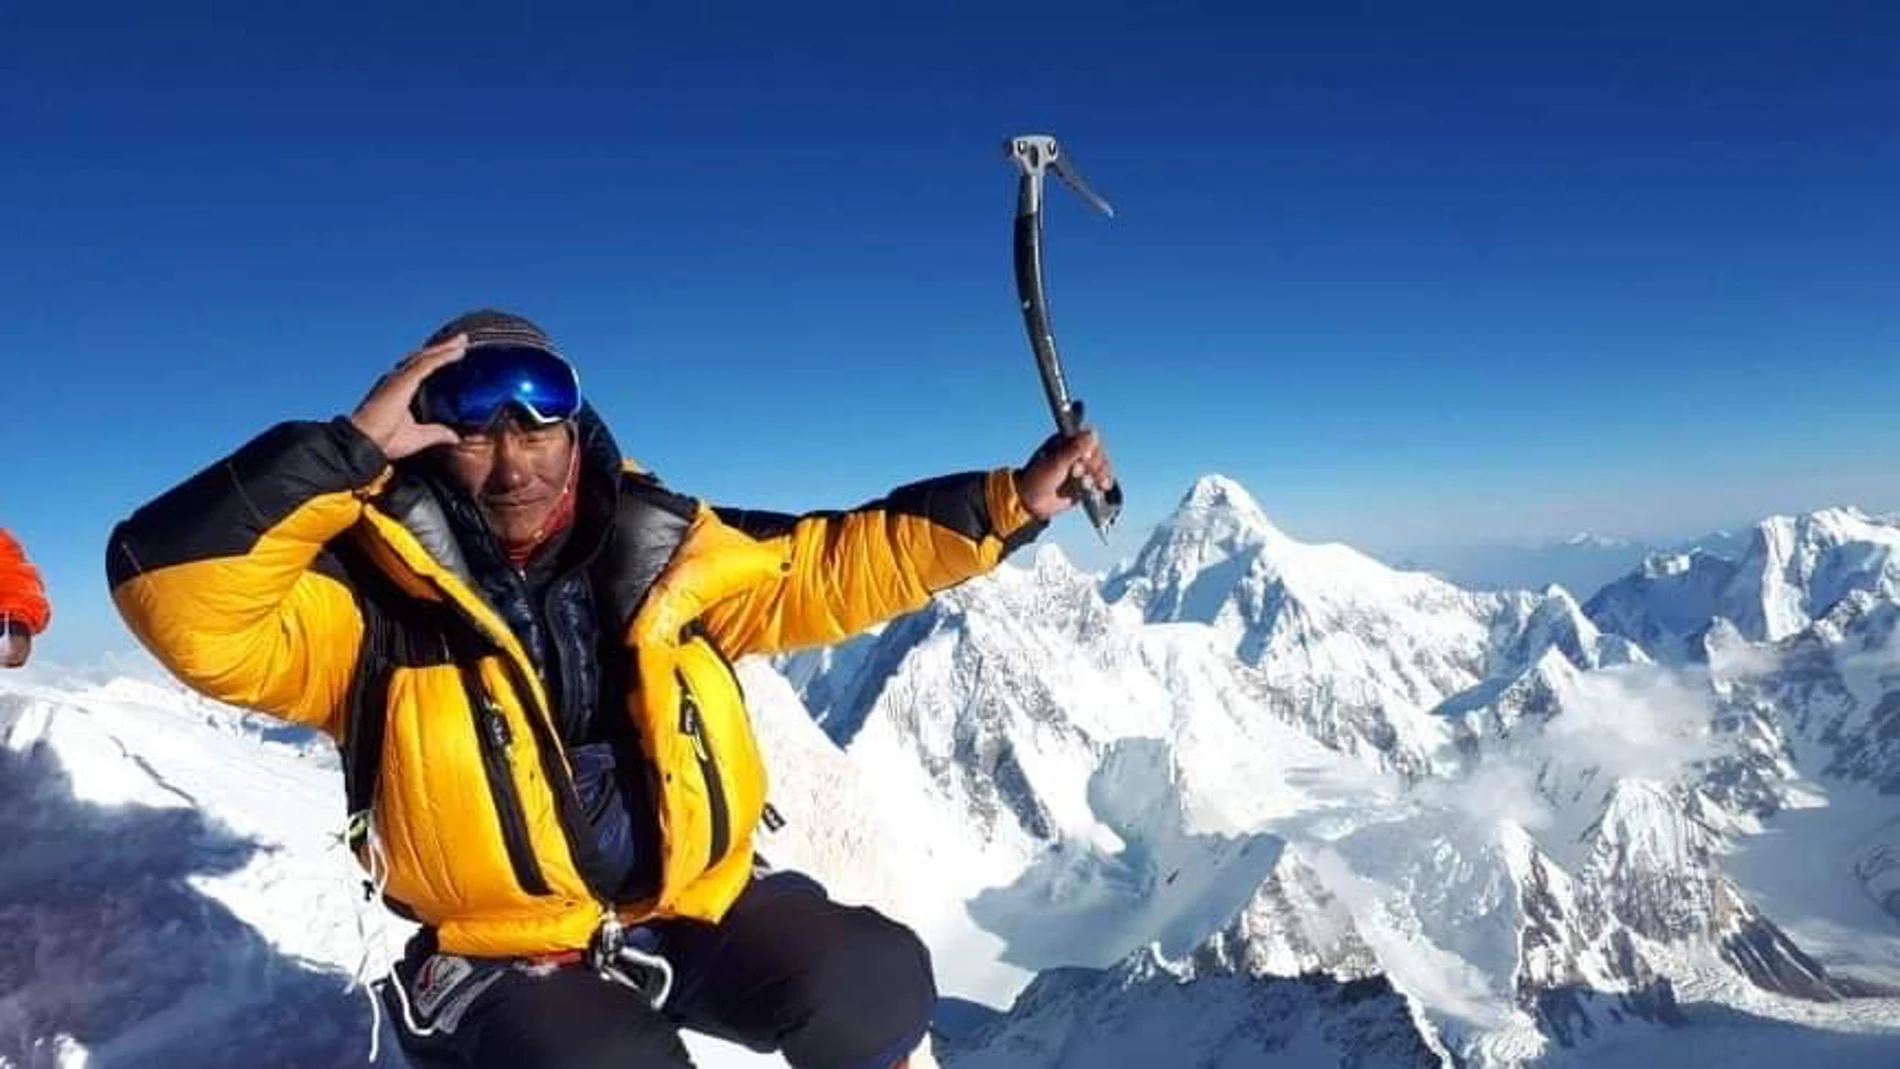 El nepalí Sanu Sherpa, primer escalador que logra subir los 14 ochomiles en dos ocasiones